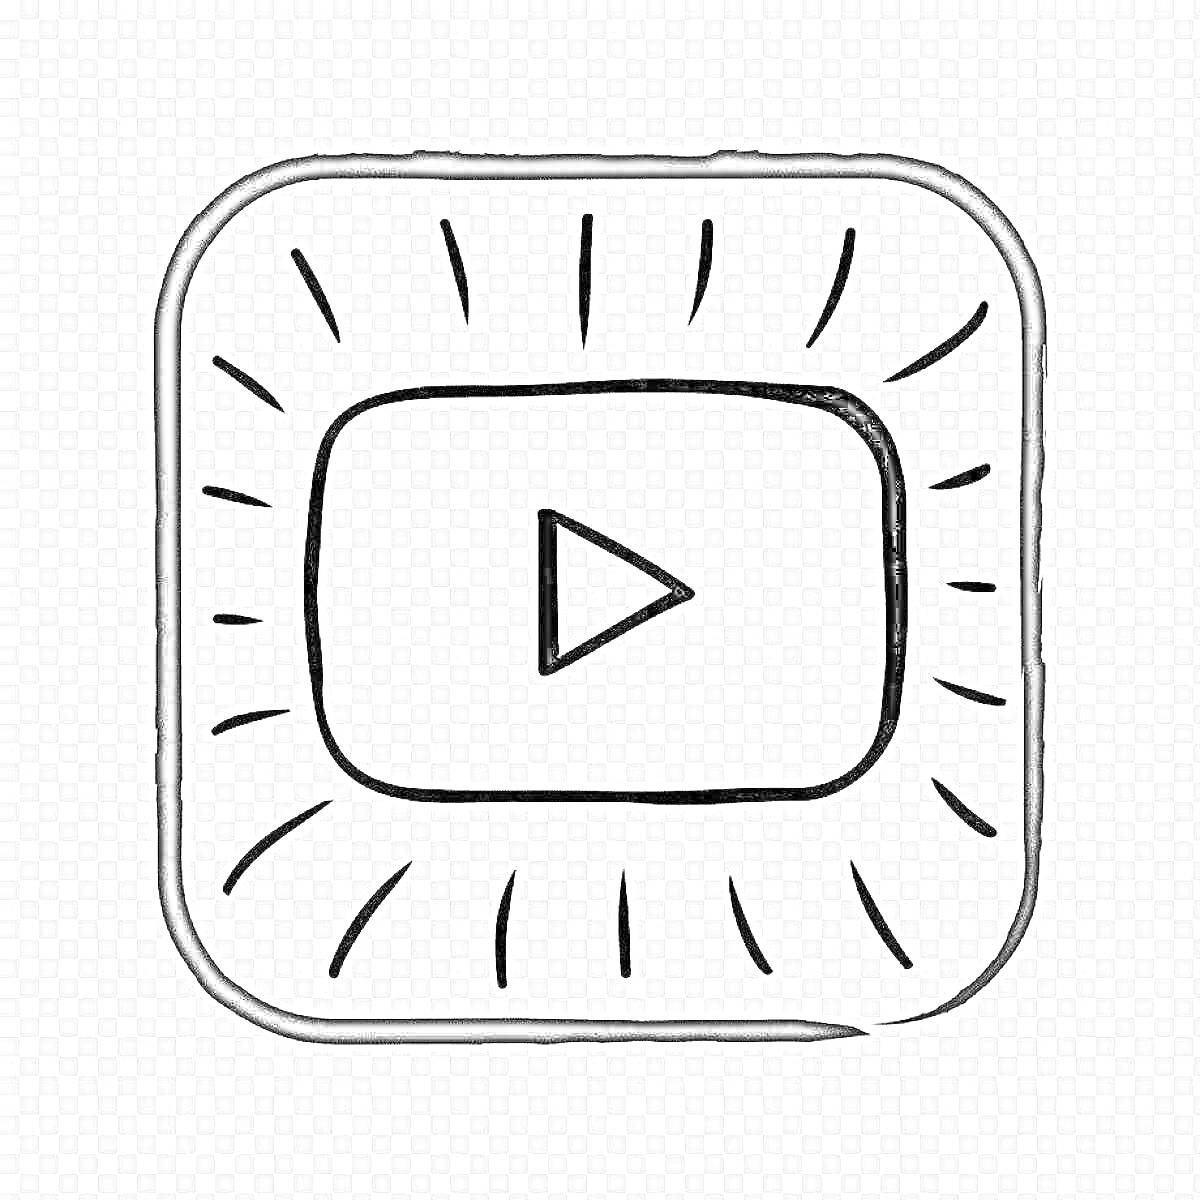 Раскраска Логотип YouTube с треугольной кнопкой воспроизведения в центре квадратной рамки с тонкими линиями вокруг